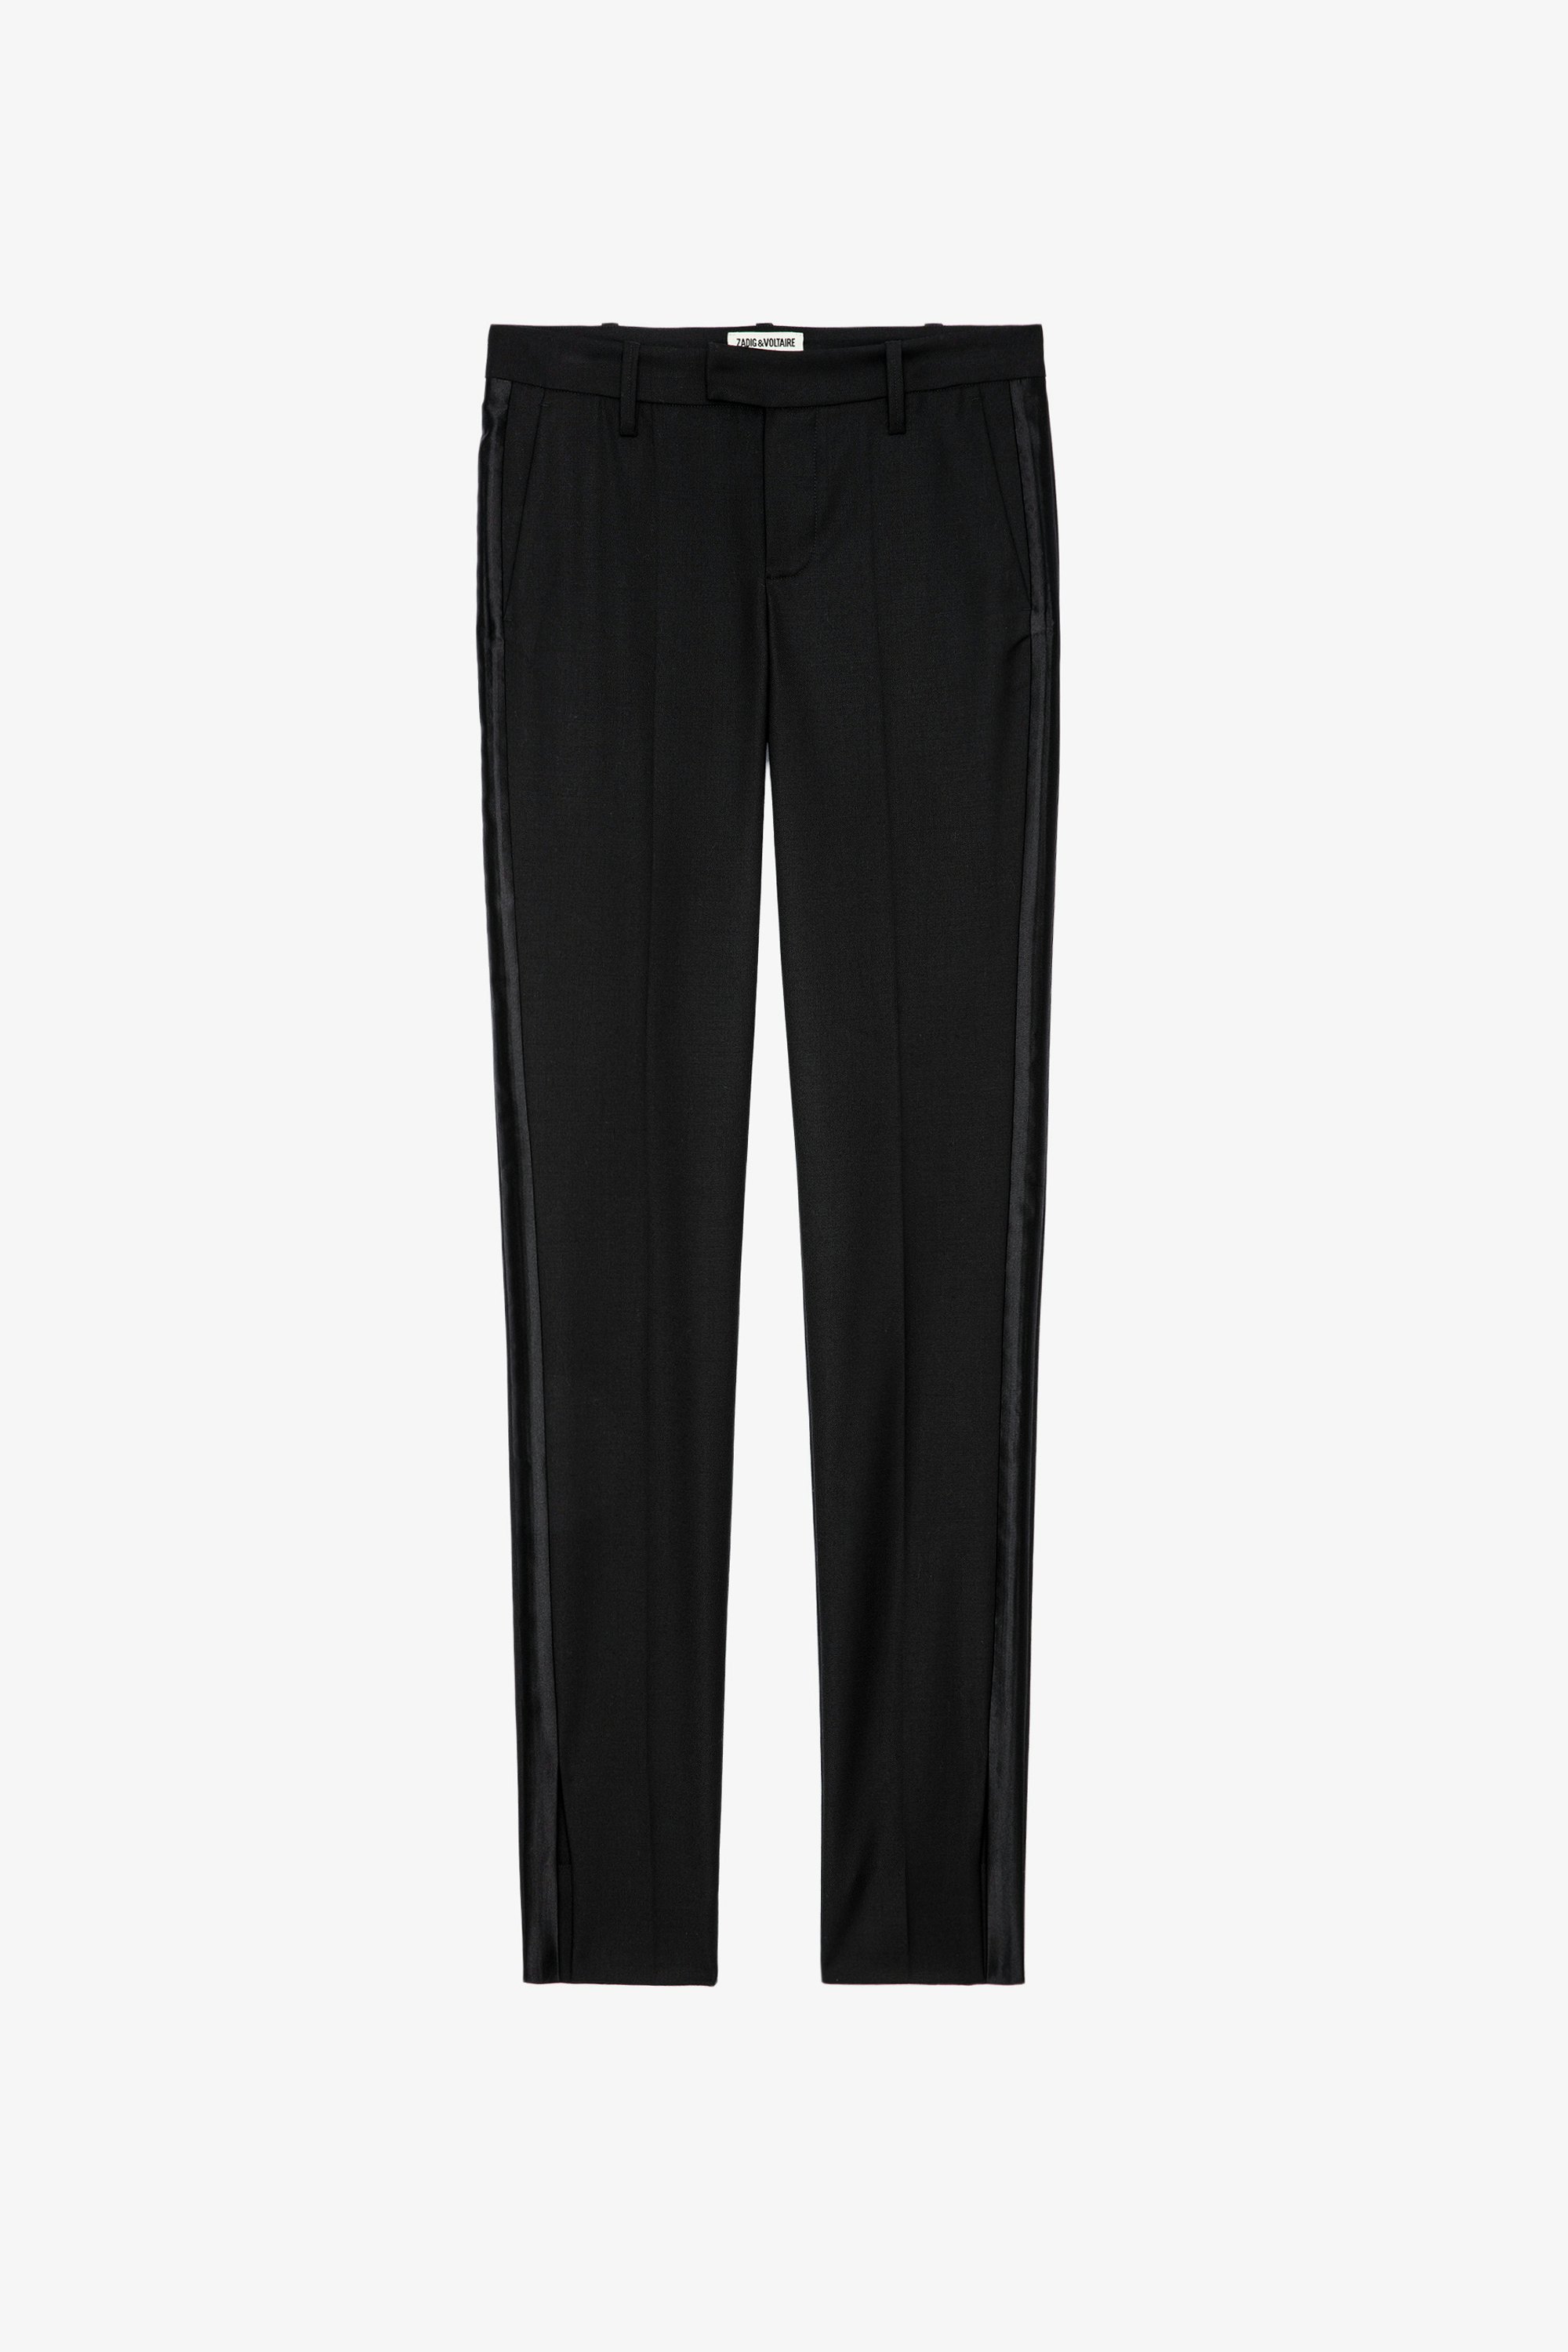 Hose Prune - Schwarze Damen-Anzughose mit Saumschlitzen